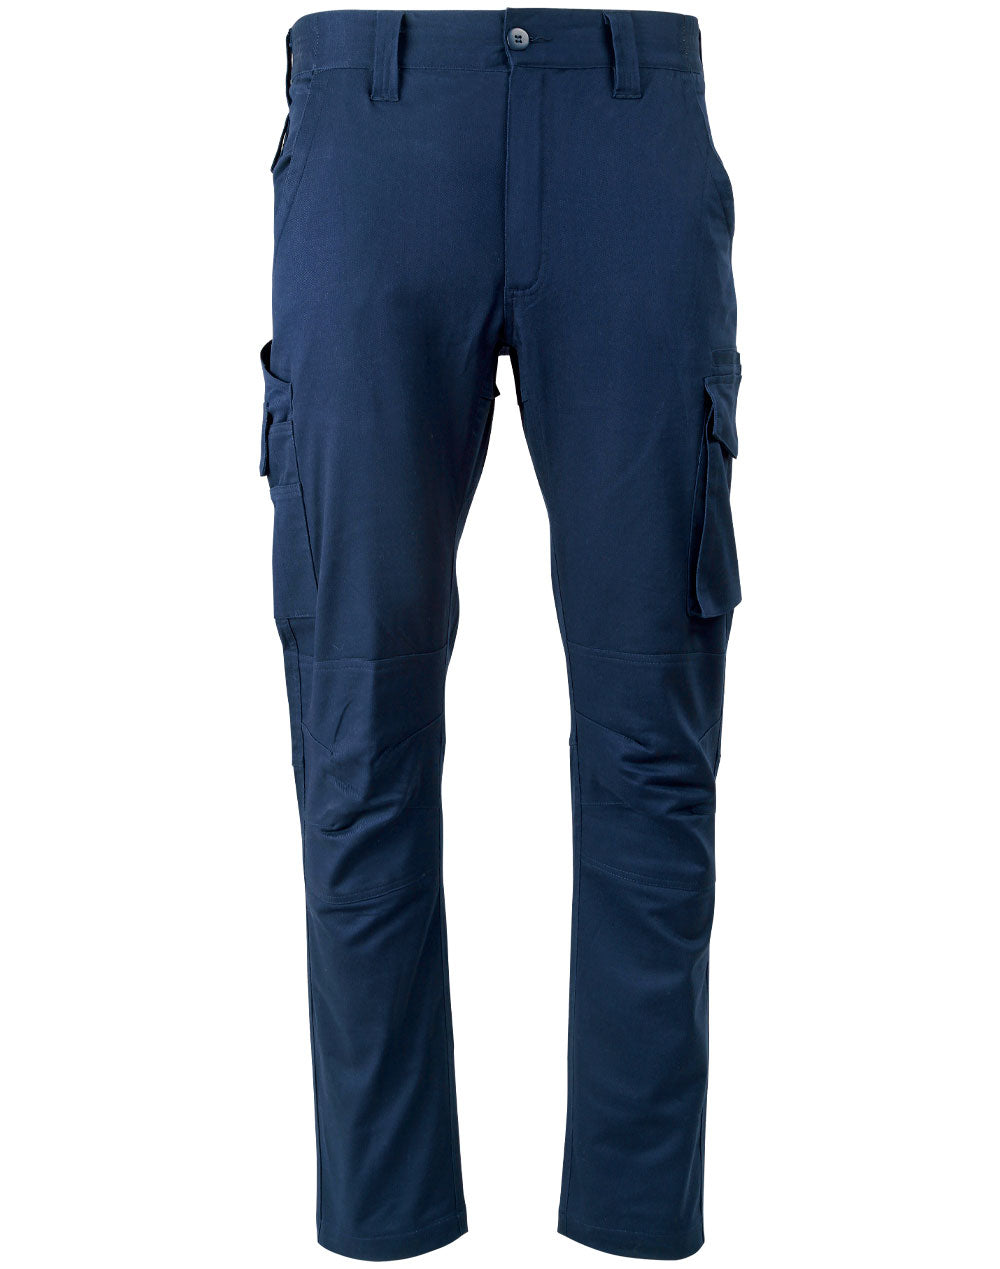 Unisex Cotton Stretch Rip-Stop Work Pants WP26 Work Wear Australian Industrial Wear 72R Navy 